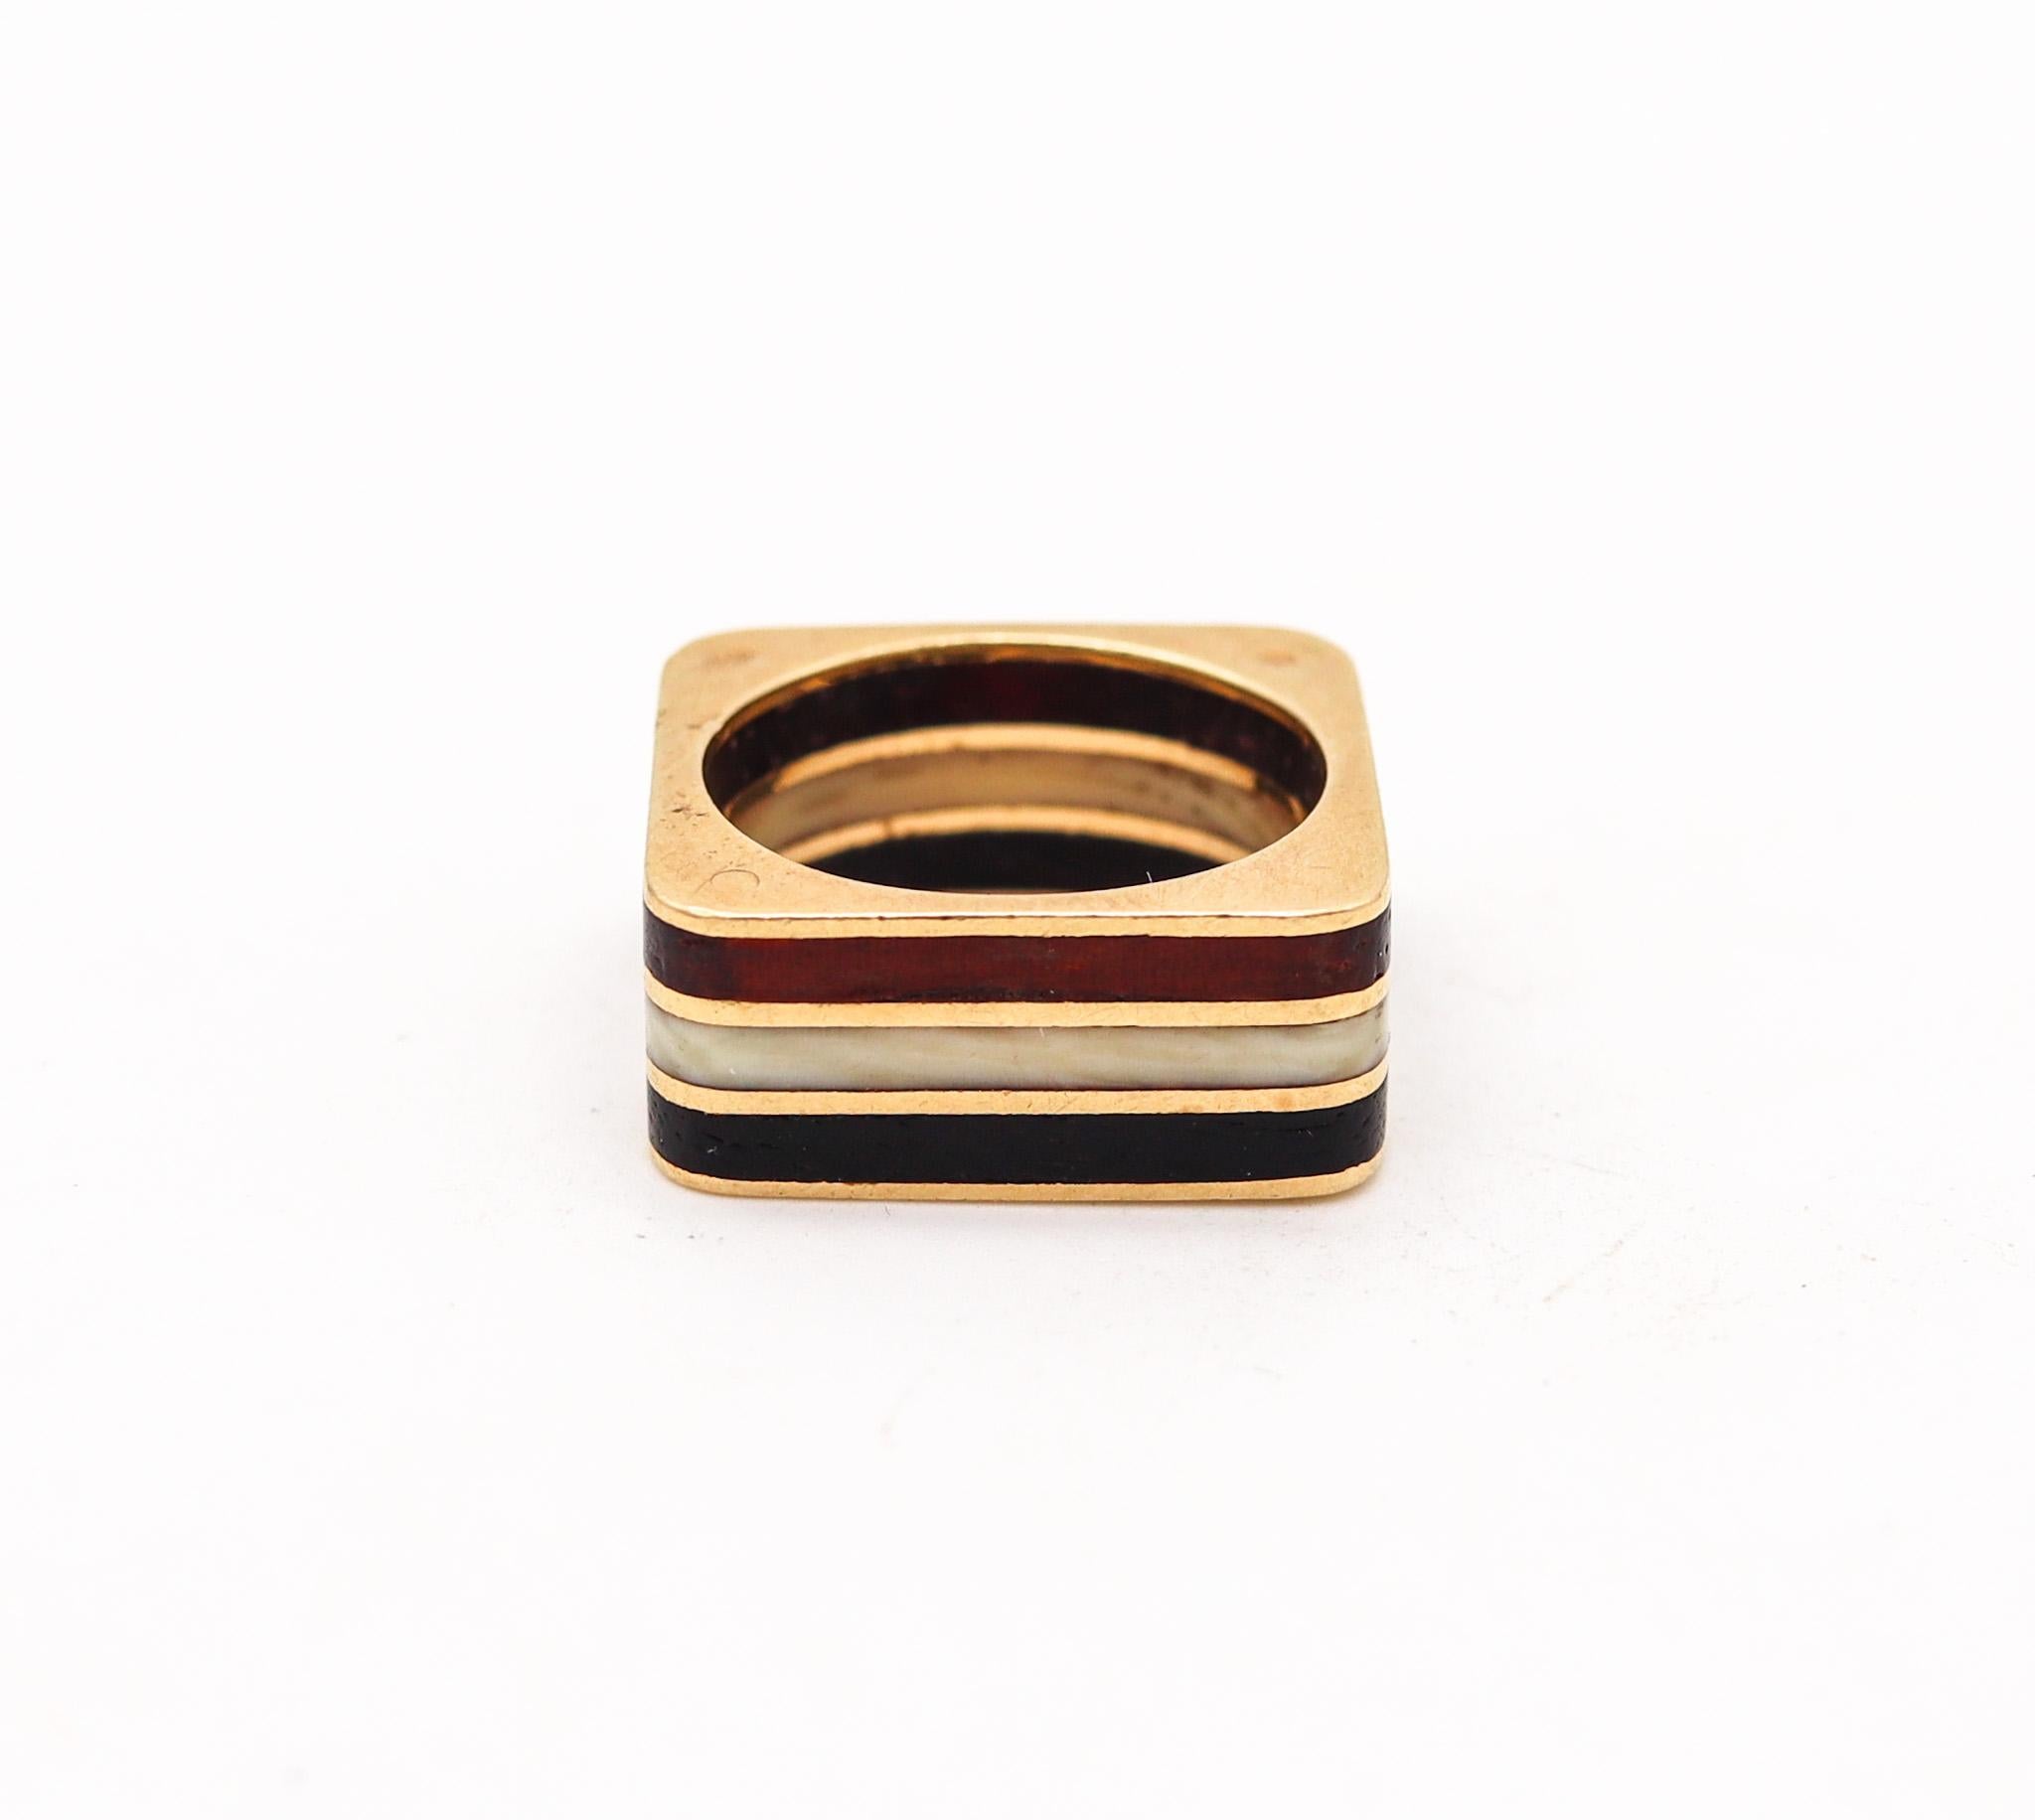 Quadratischer Ring, entworfen von Octavio Sarda Palau.

Fabelhafter architektonischer, geometrischer Ring, der in Barcelona, Spanien, von dem Künstler und Goldschmied Octavio Sarda Palau in den 1970er Jahren geschaffen wurde. Dieser ungewöhnliche